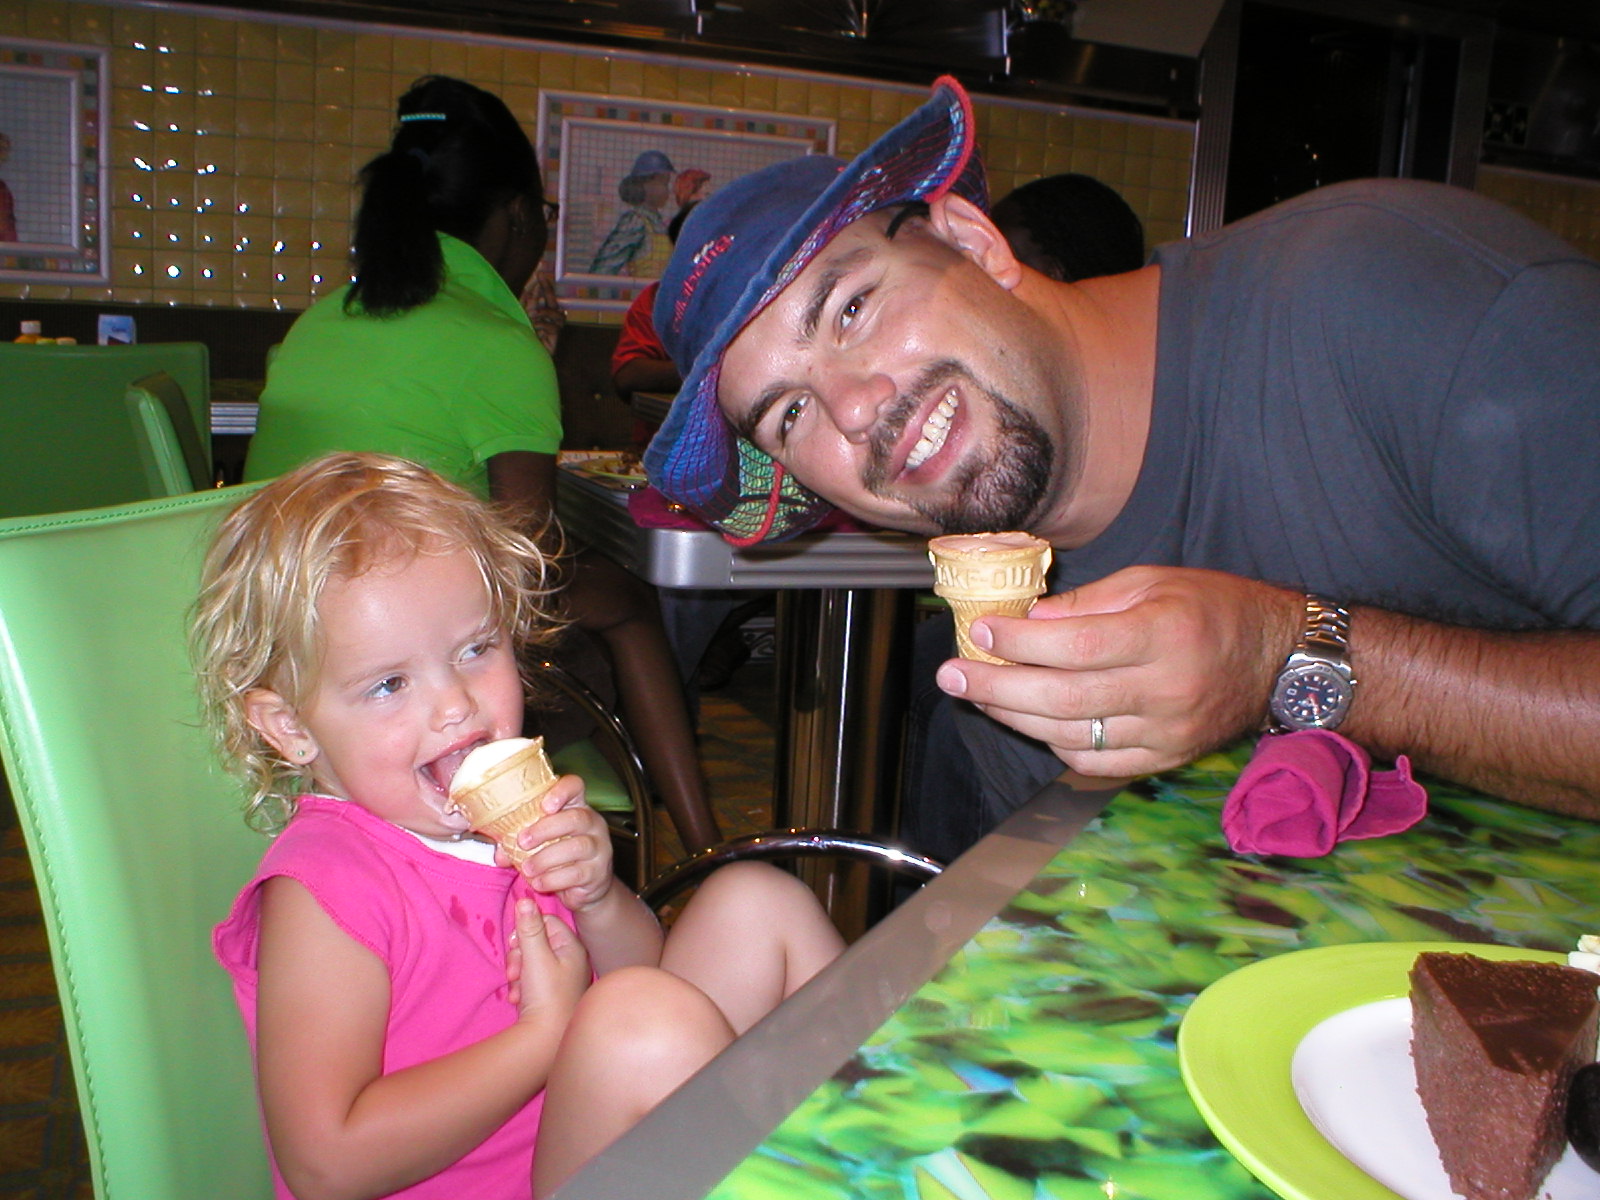 Kaylin & Ryan Enjoying some ice cream.